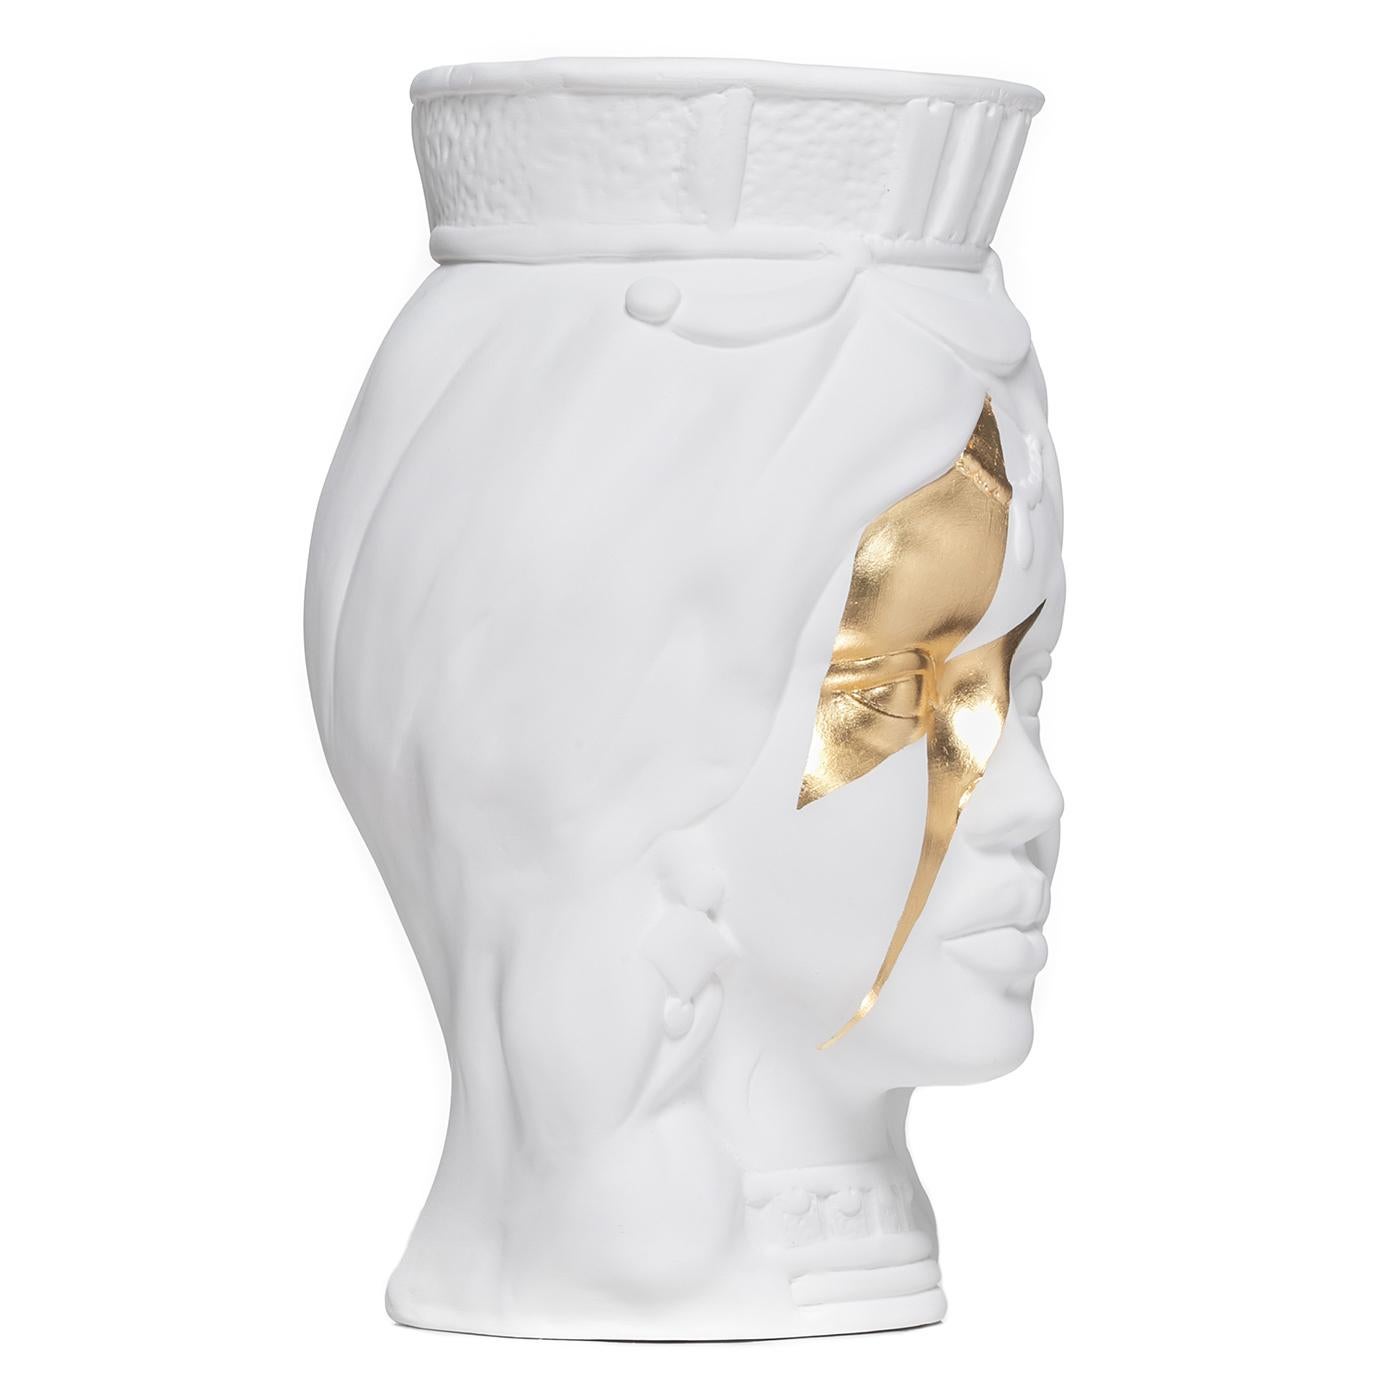 Fabriqué de main de maître en argile blanche, ce vase étonnant représente le visage d'une jeune femme parée d'une couronne et de bijoux suggérant une origine noble. Son regard captivant est renforcé par un puissant éclair en feuille d'or marquant